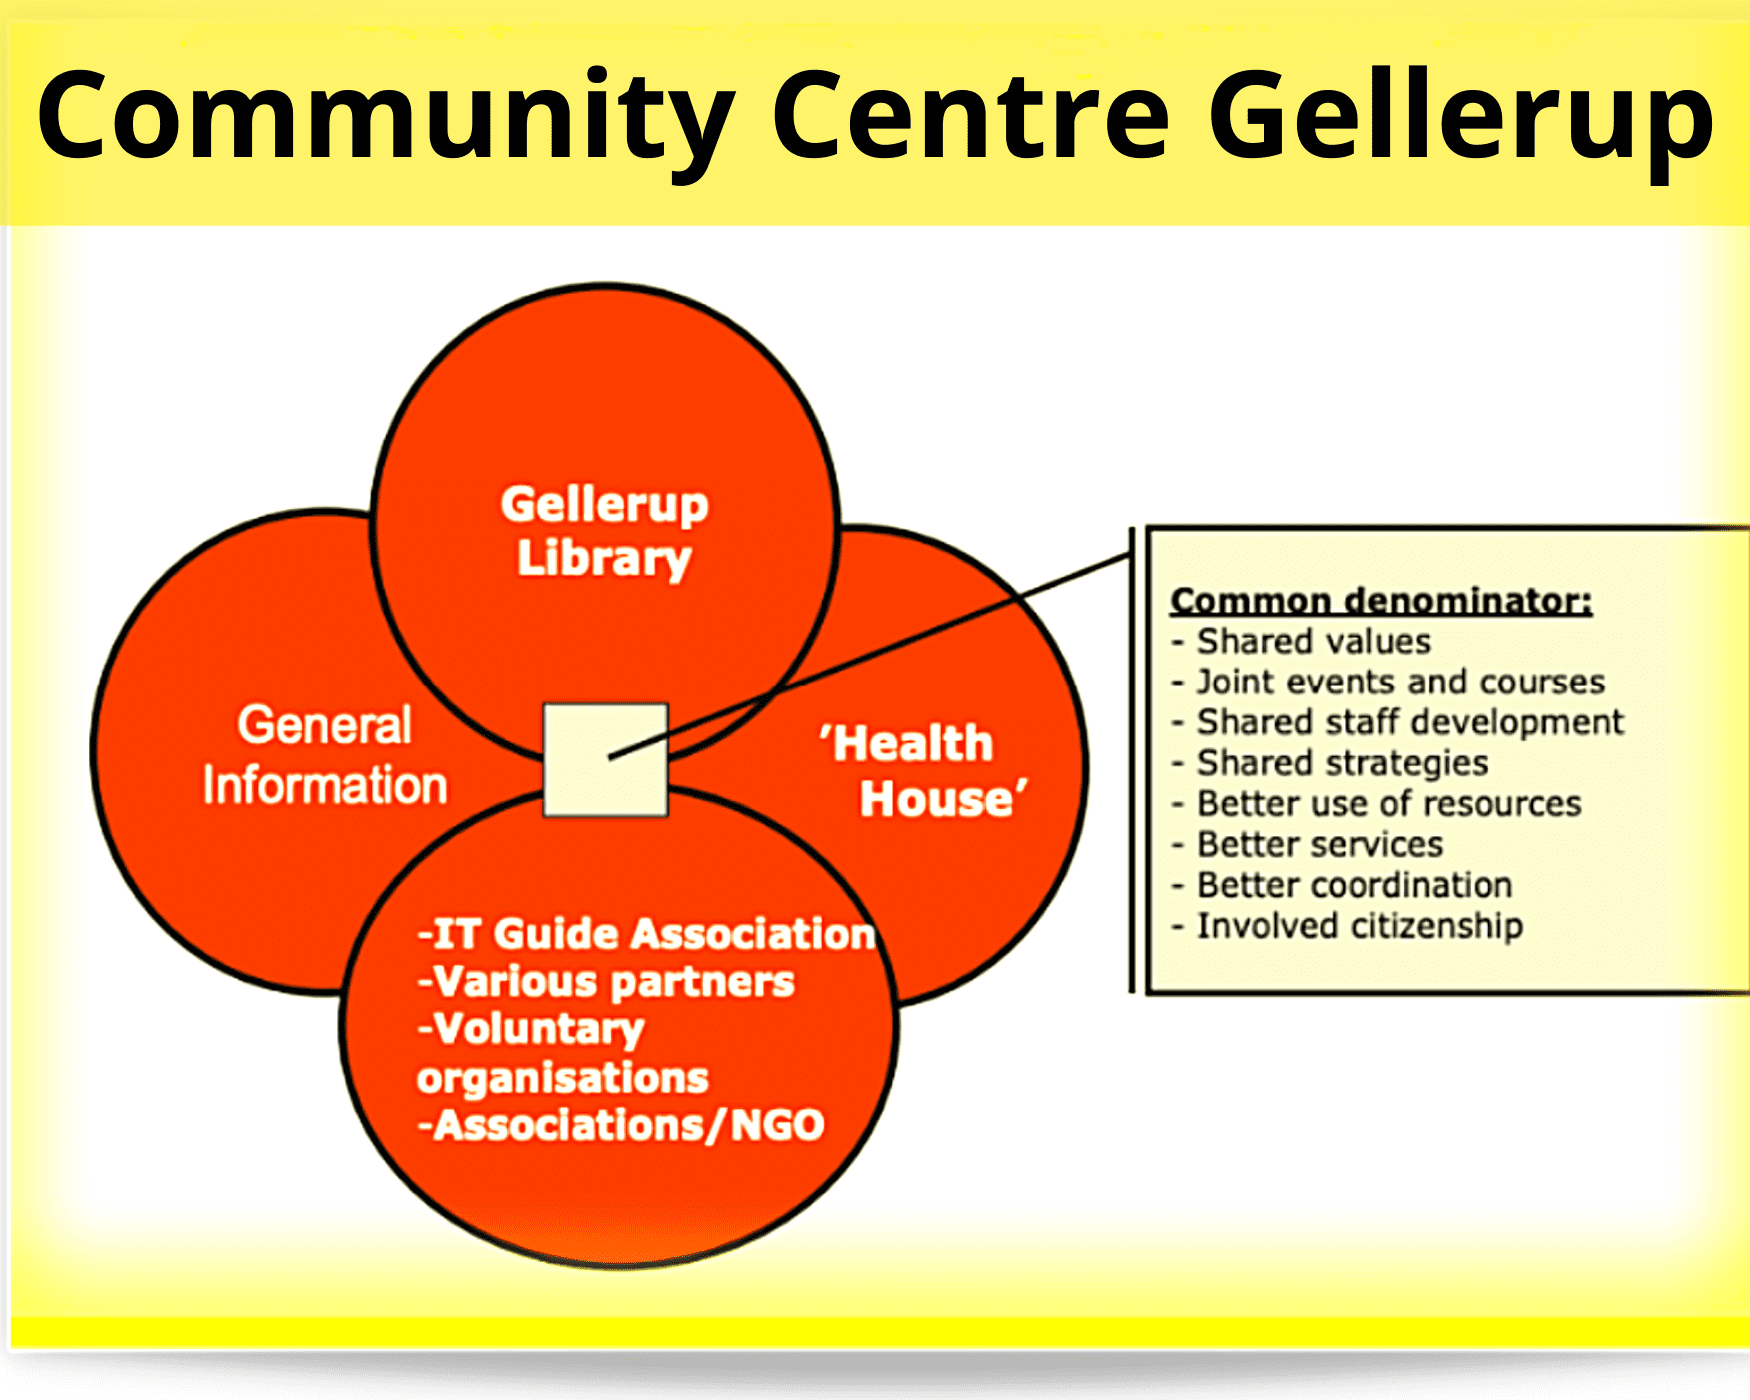 Hate speech best practices: mappa concettuale della composizione del Community Centre Gellerup